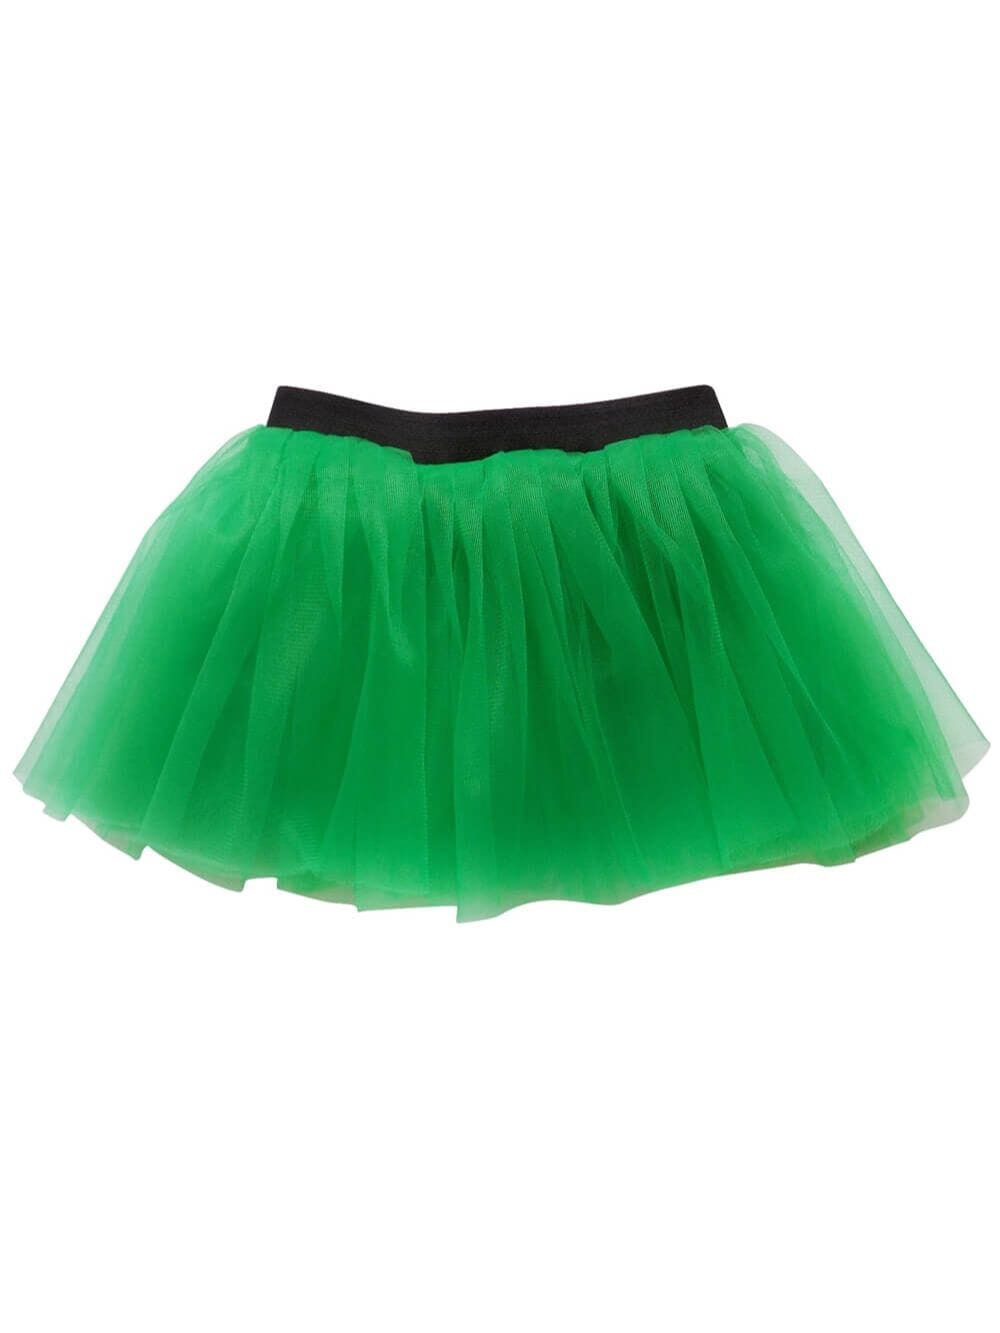 Green Adult Size Women's 5K Running Tutu Skirt Costume - Sydney So Sweet